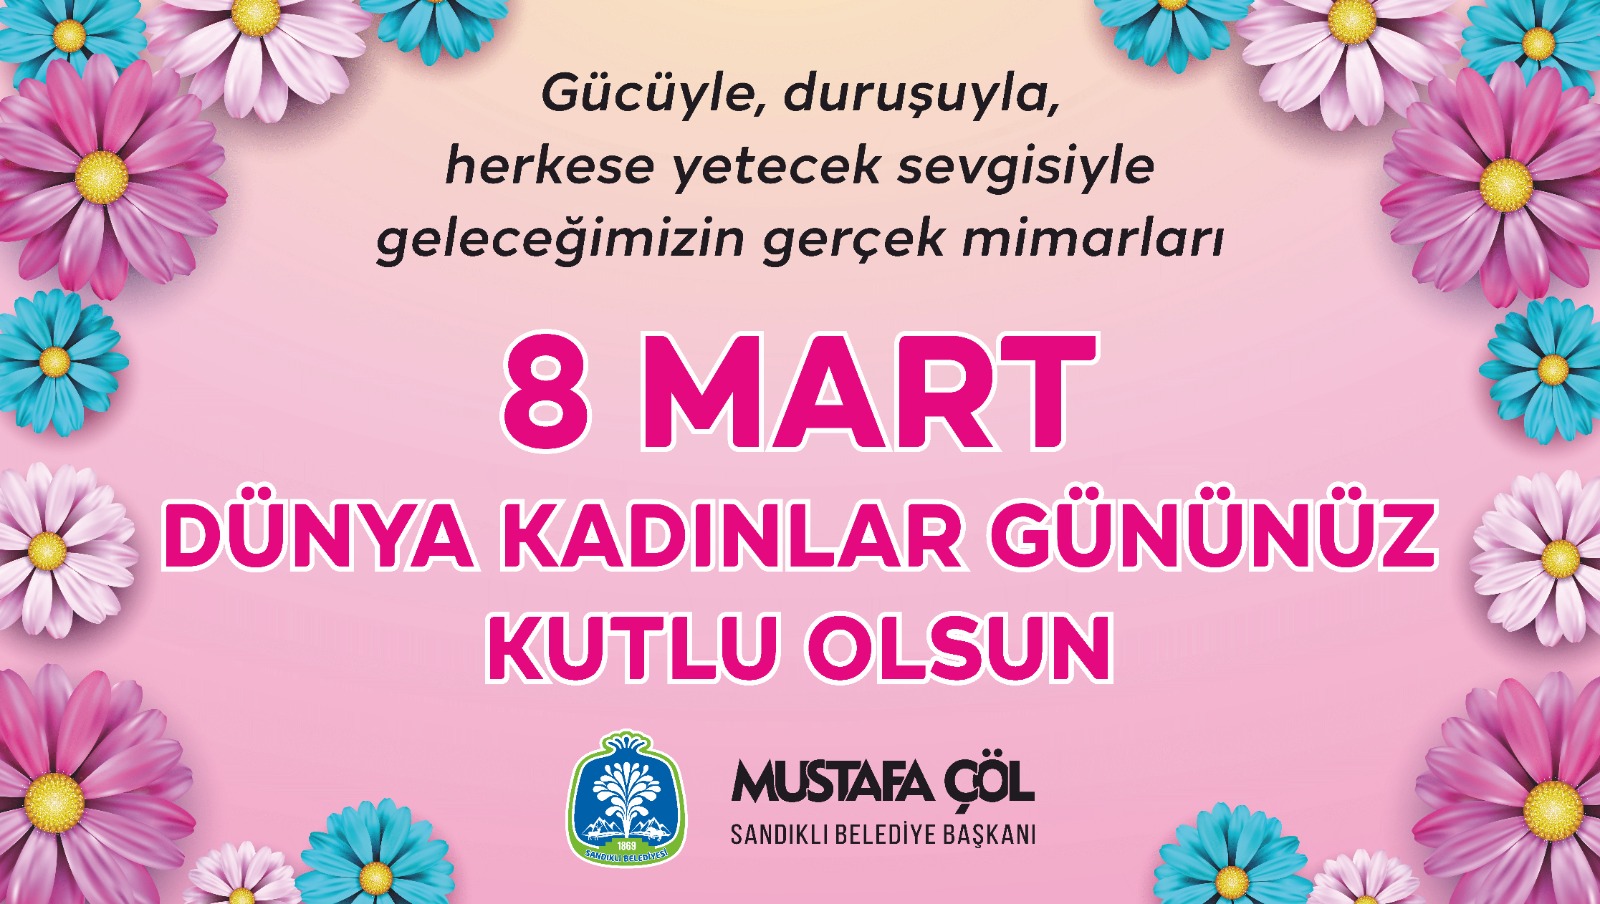 Başkan Mustafa Çöl?den 8 Mart Dünya Kadınlar Günü mesajı